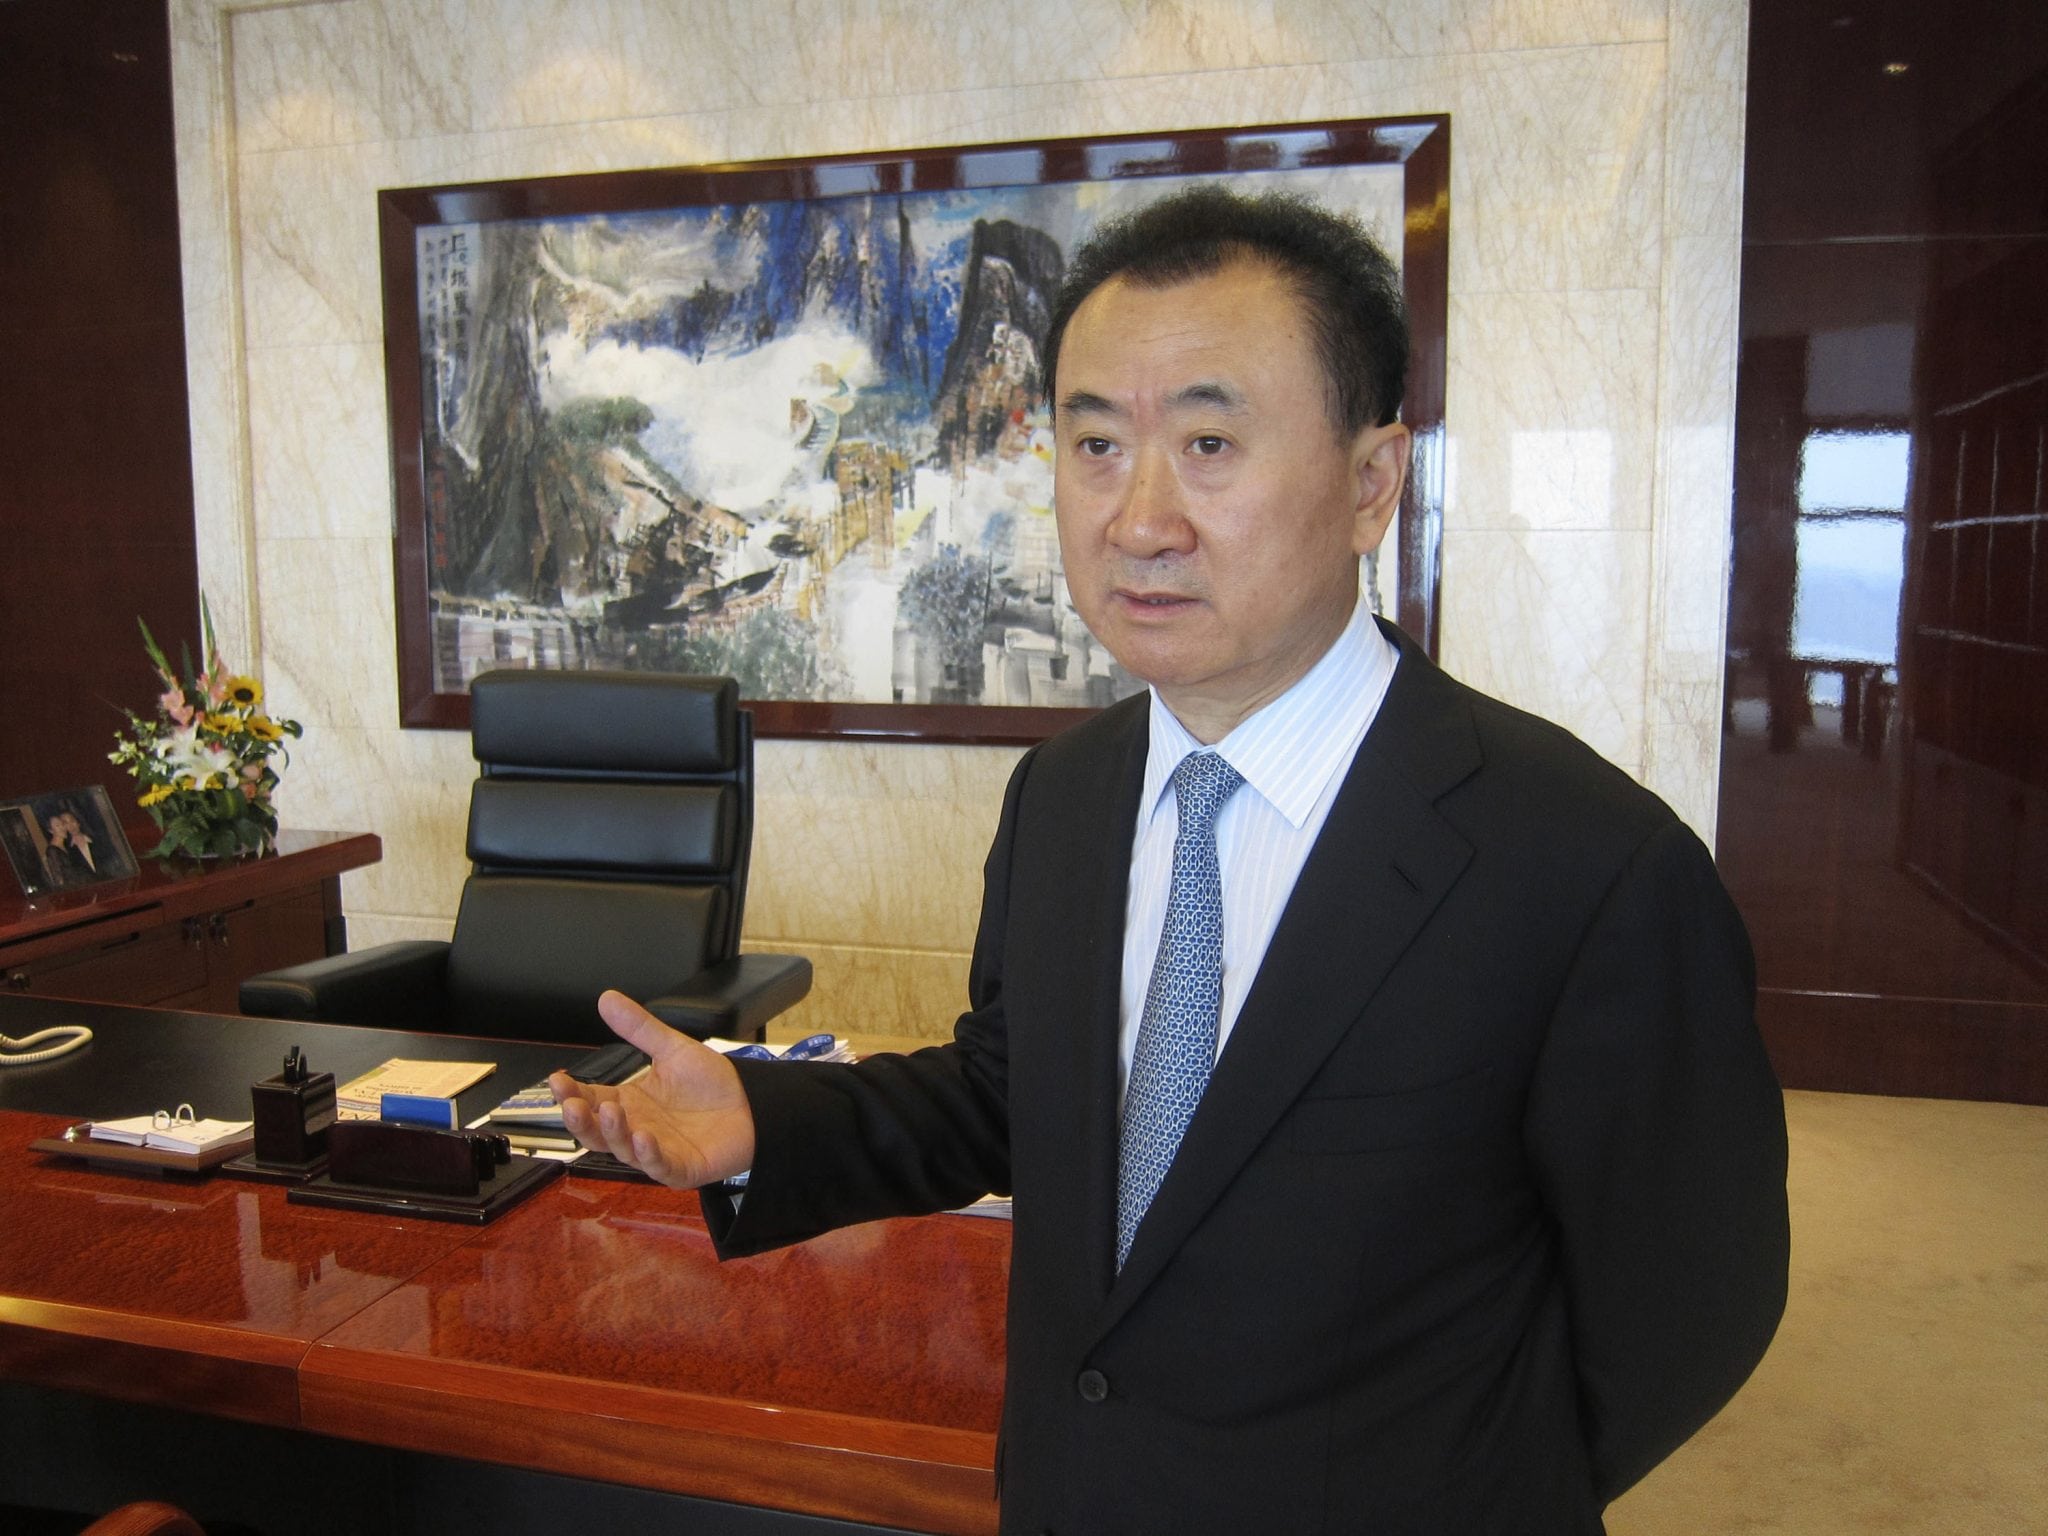 Wang Jianlin, Chairman Of The Dalian Wanda Group, In His Beijing, China, Office.